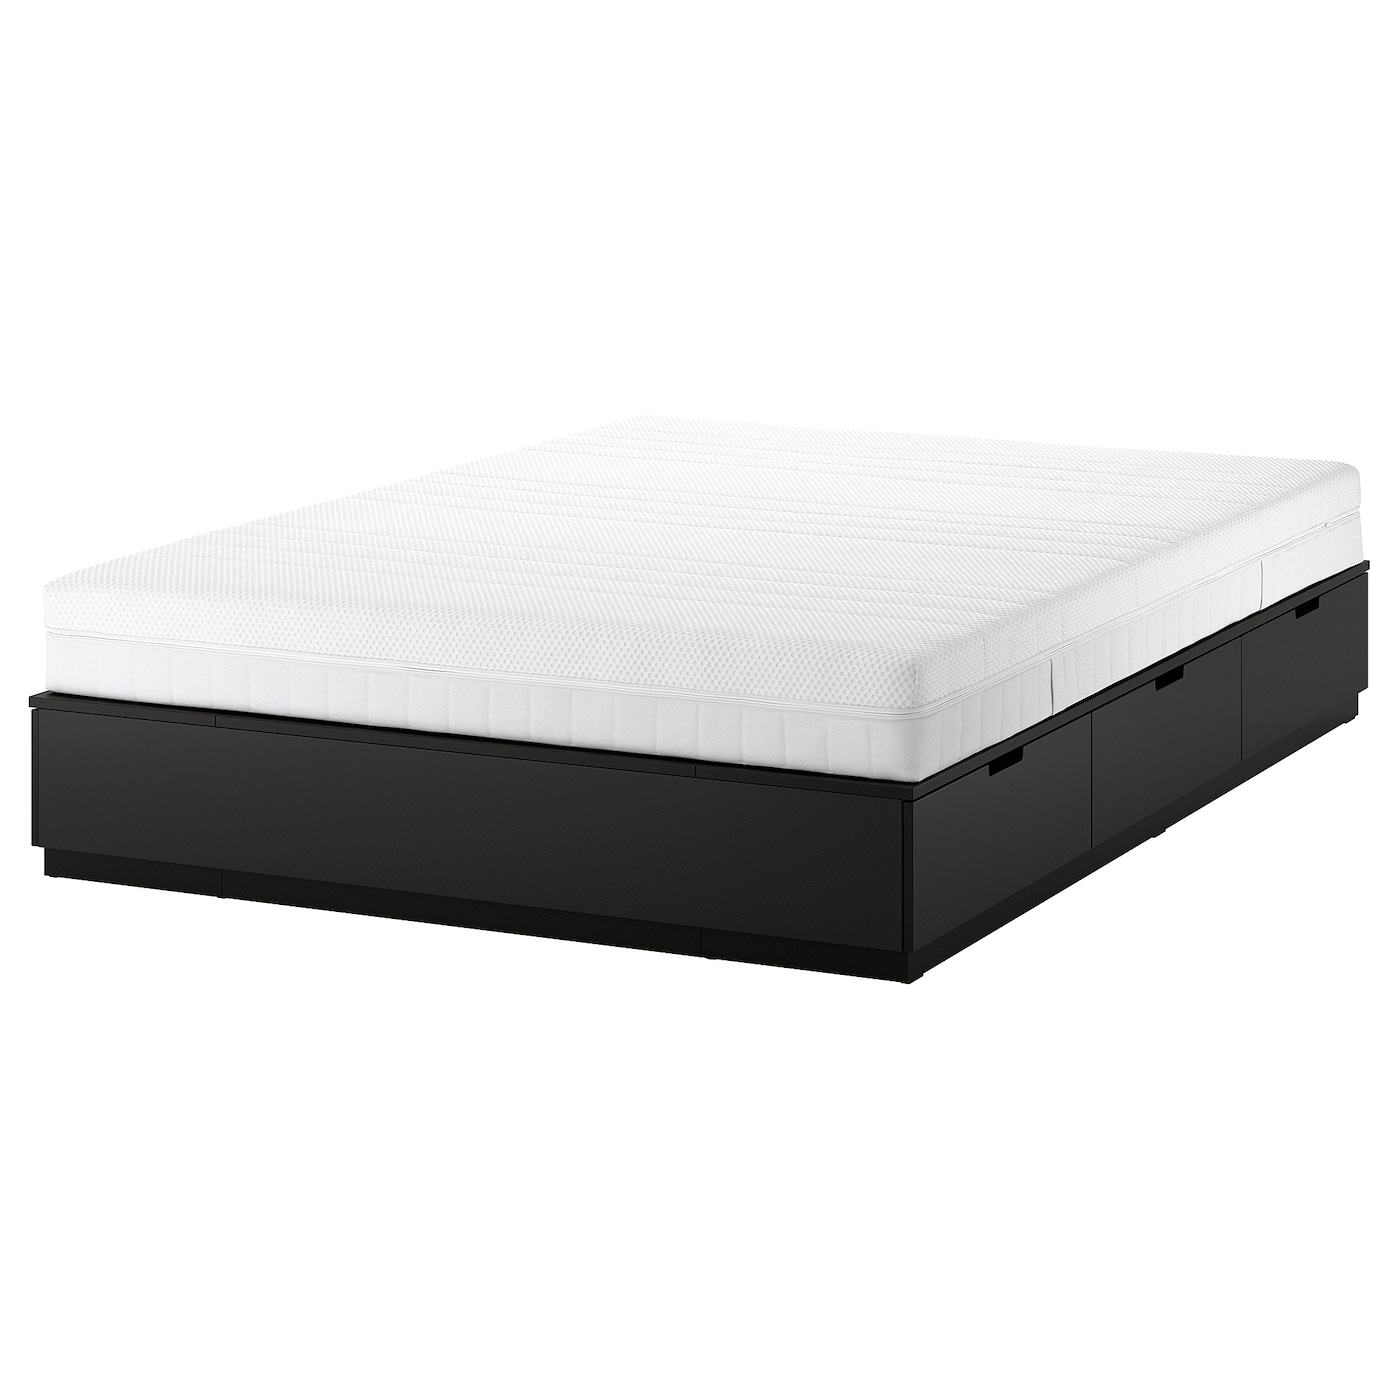 Каркас кровати с ящиком для хранения и матрасом - IKEA NORDLI, 200х140 см, матрас средне-жесткий, черный, НОРДЛИ ИКЕА